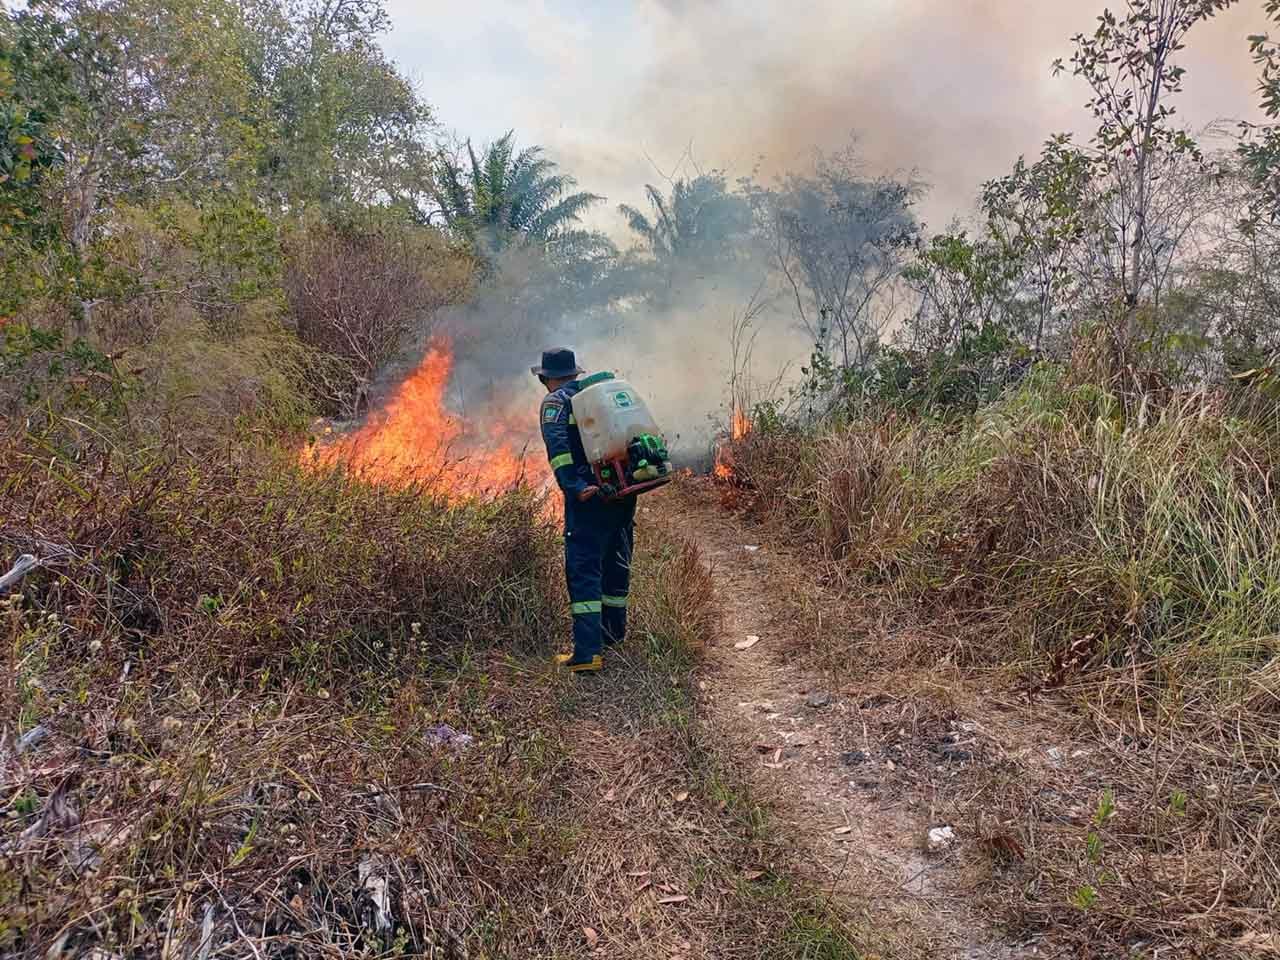 TUTURA.ID - Pemicu kebakaran hutan dan lahan bukan semata faktor cuaca panas